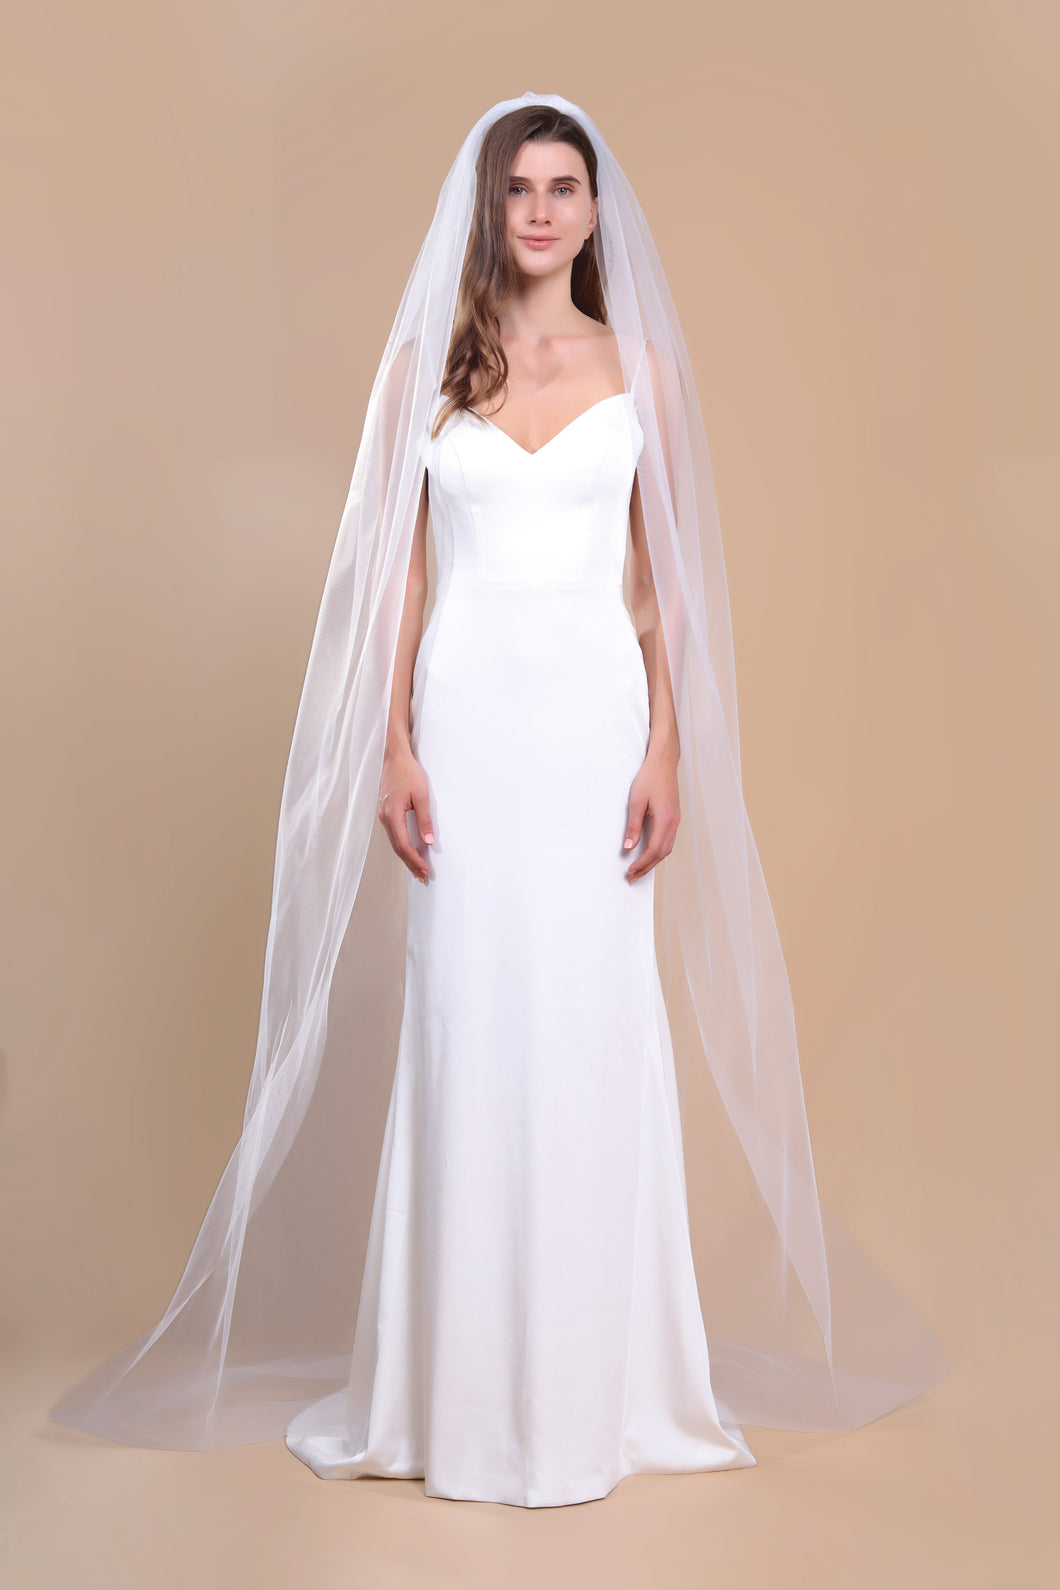 AVA - one layer chapel length wedding veil with plain cut edge